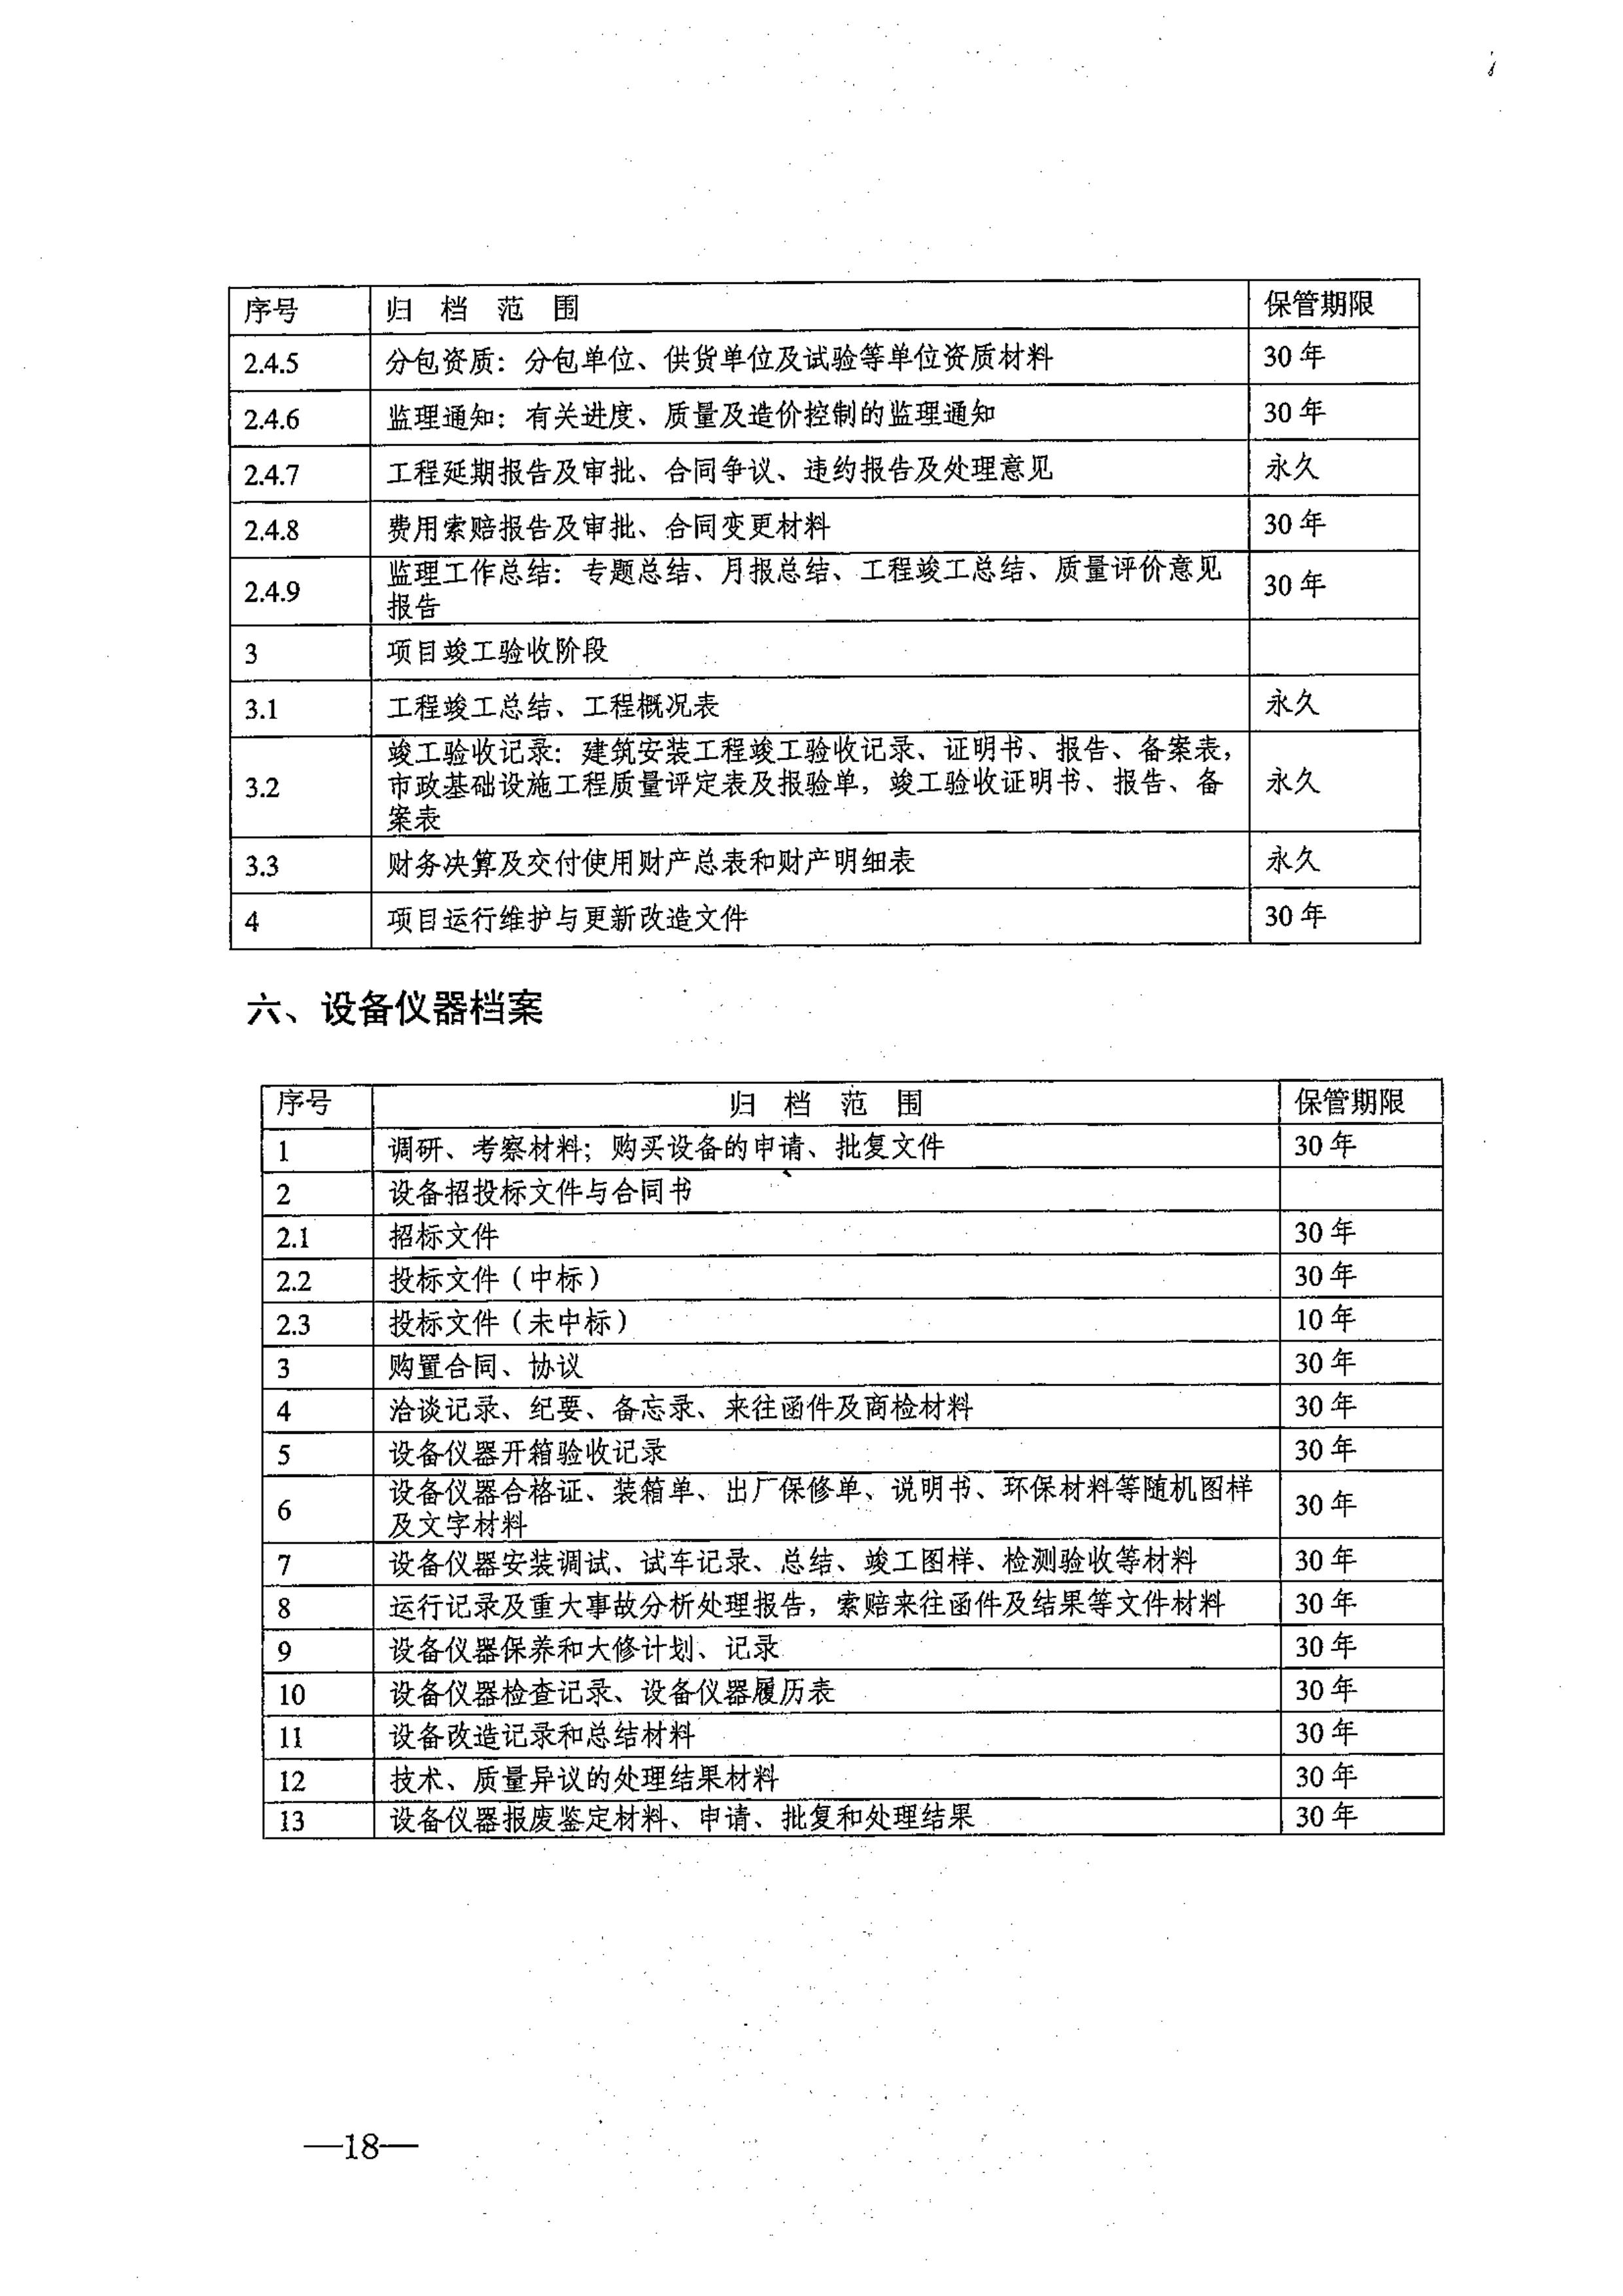 省教育厅、省档案局关于印发《江苏省中小学校档案管理暂行办法》的通知-图片-0018